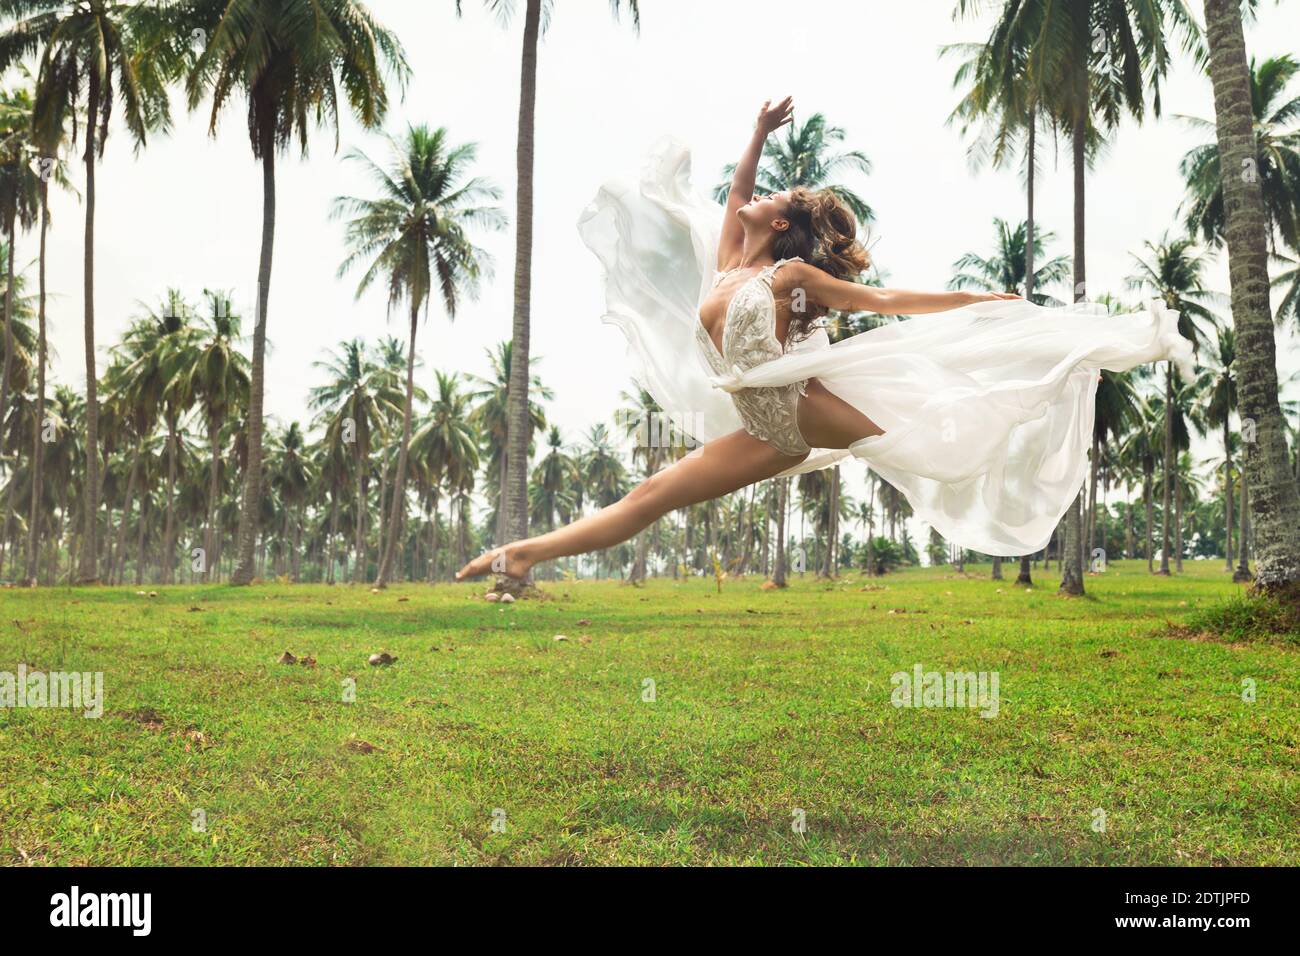 Glückliche Braut in schönen Hochzeitskleid ist so aufgeregt und glücklich. Sie springt im Tanz auf dem Feld mit vielen Palmen Stockfoto